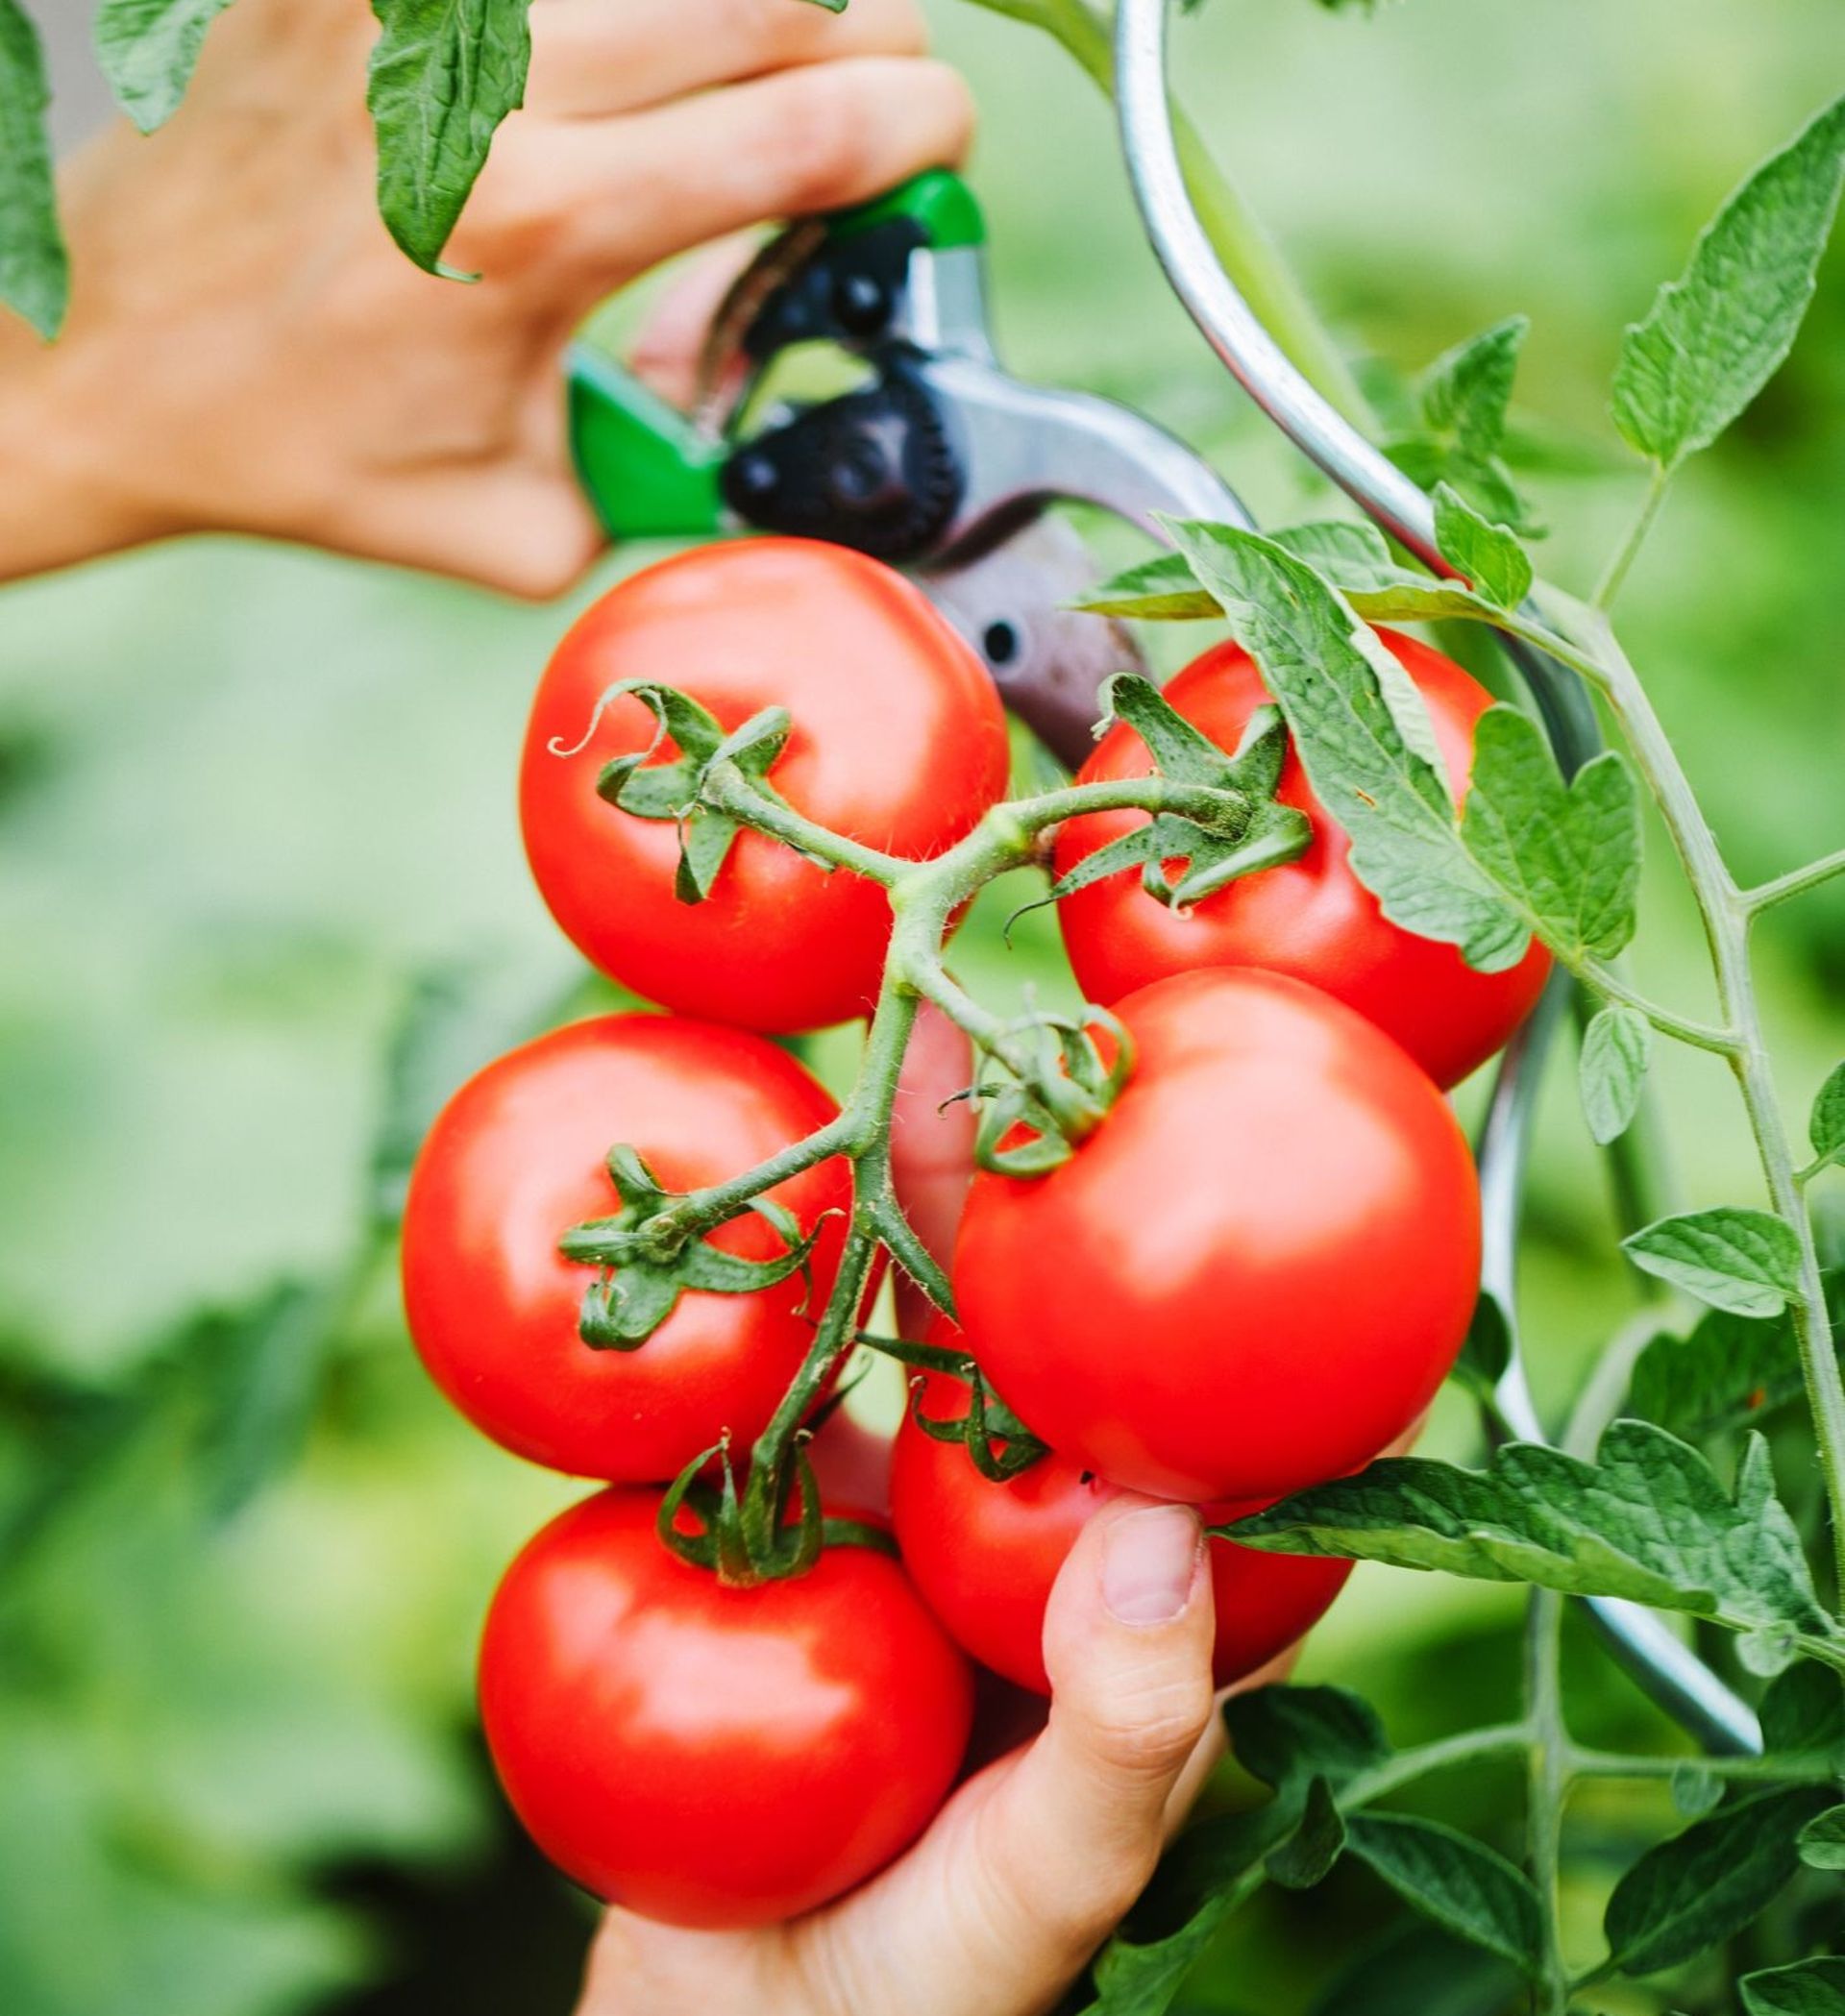 Les plants de tomates crient 25 fois par heure quand on les coupe